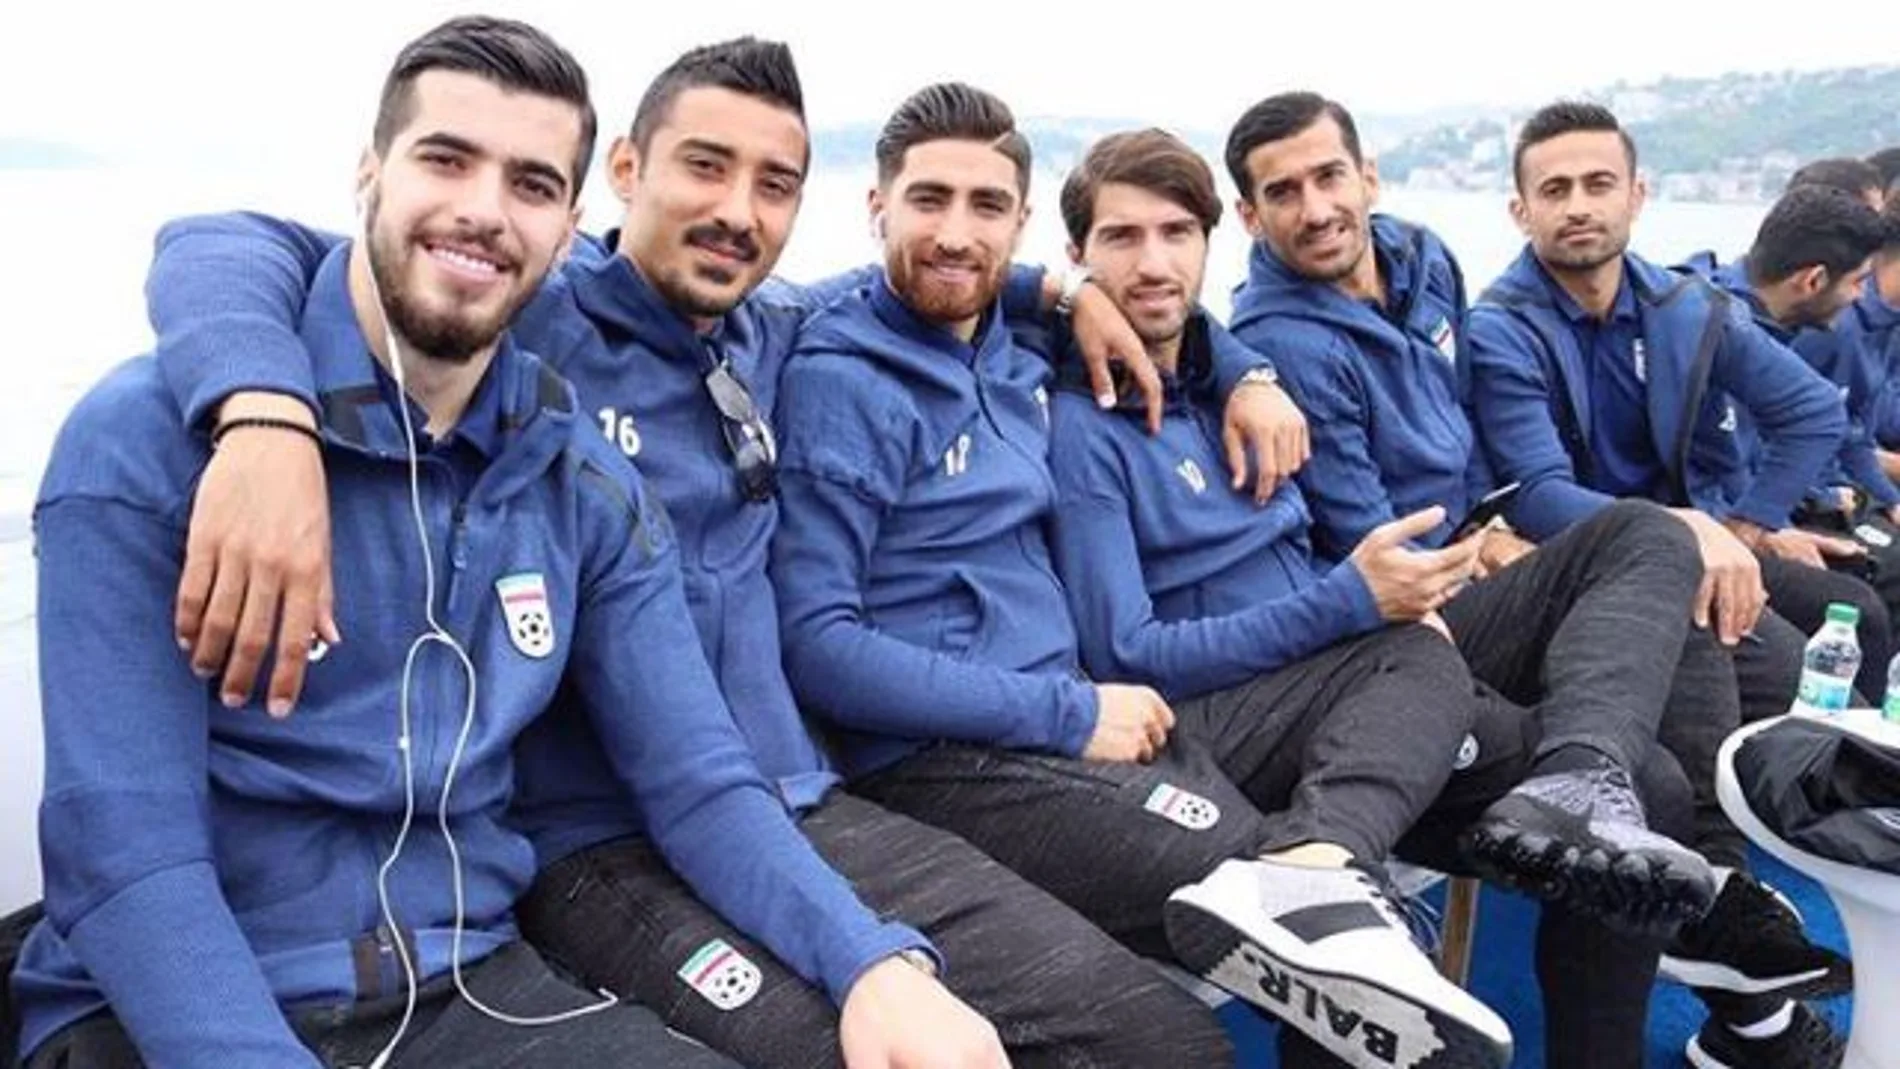 Los jugadores de la selección de Irán están revolucionando las redes sociales por sus atractivos físicos / Instagram